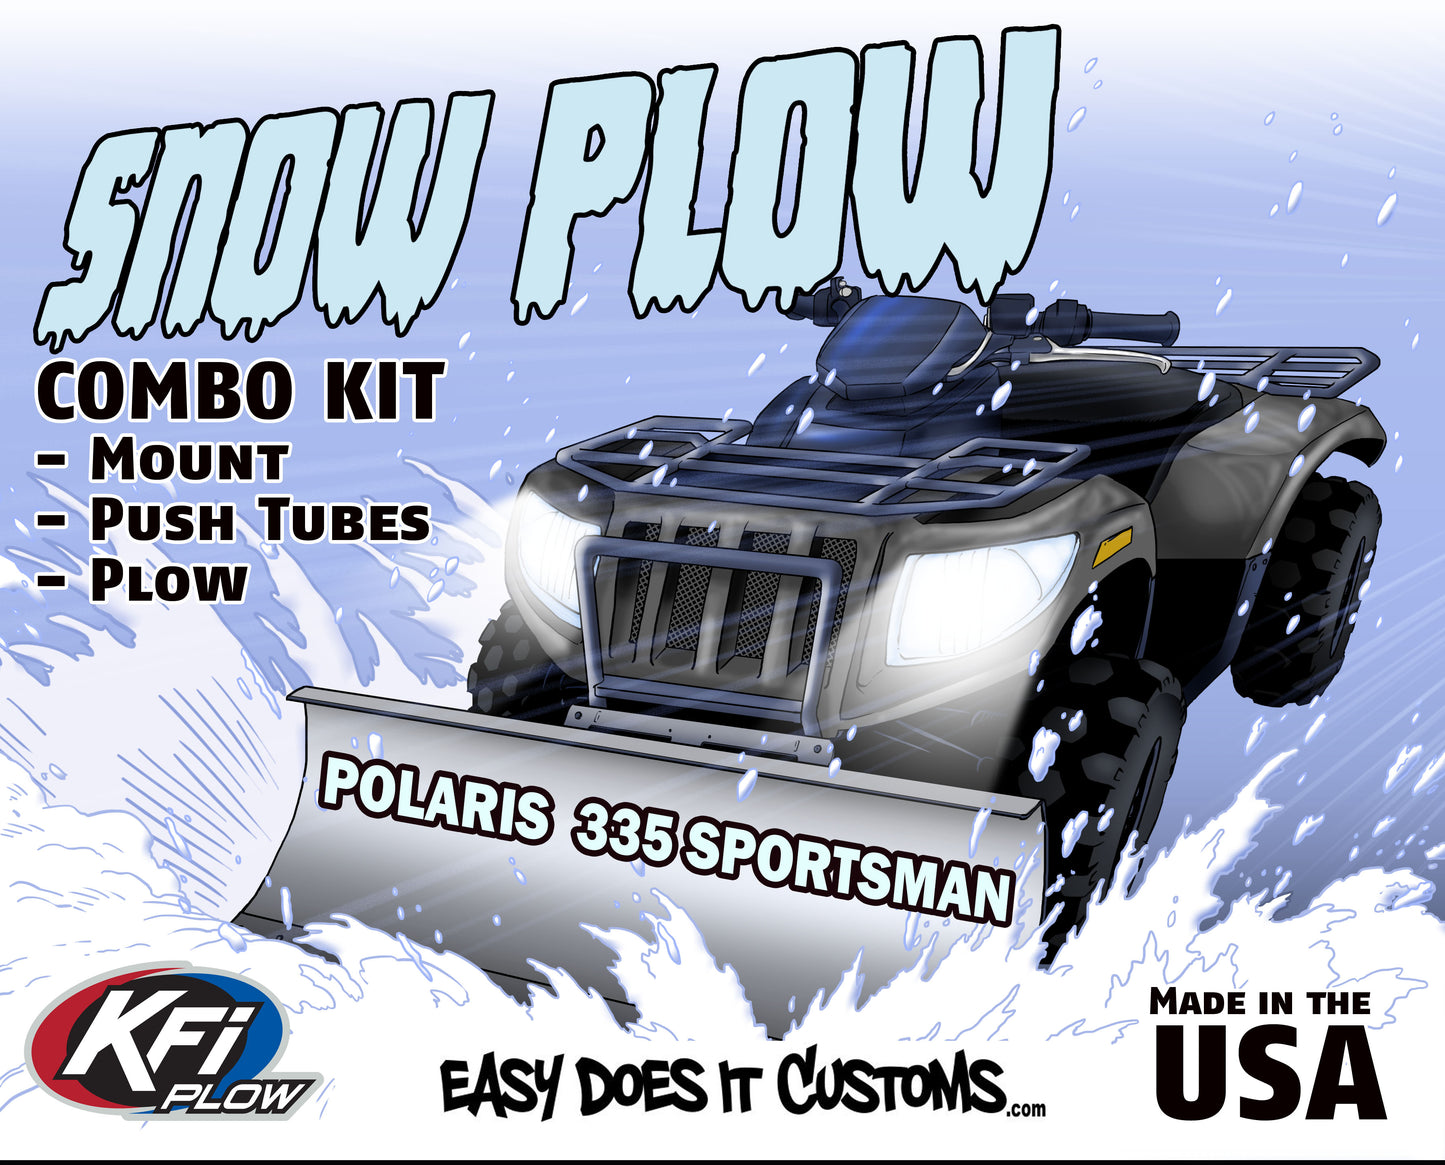 Polaris 335 Sportsman - 2000-older ATV    KFI Plow Mount 106020